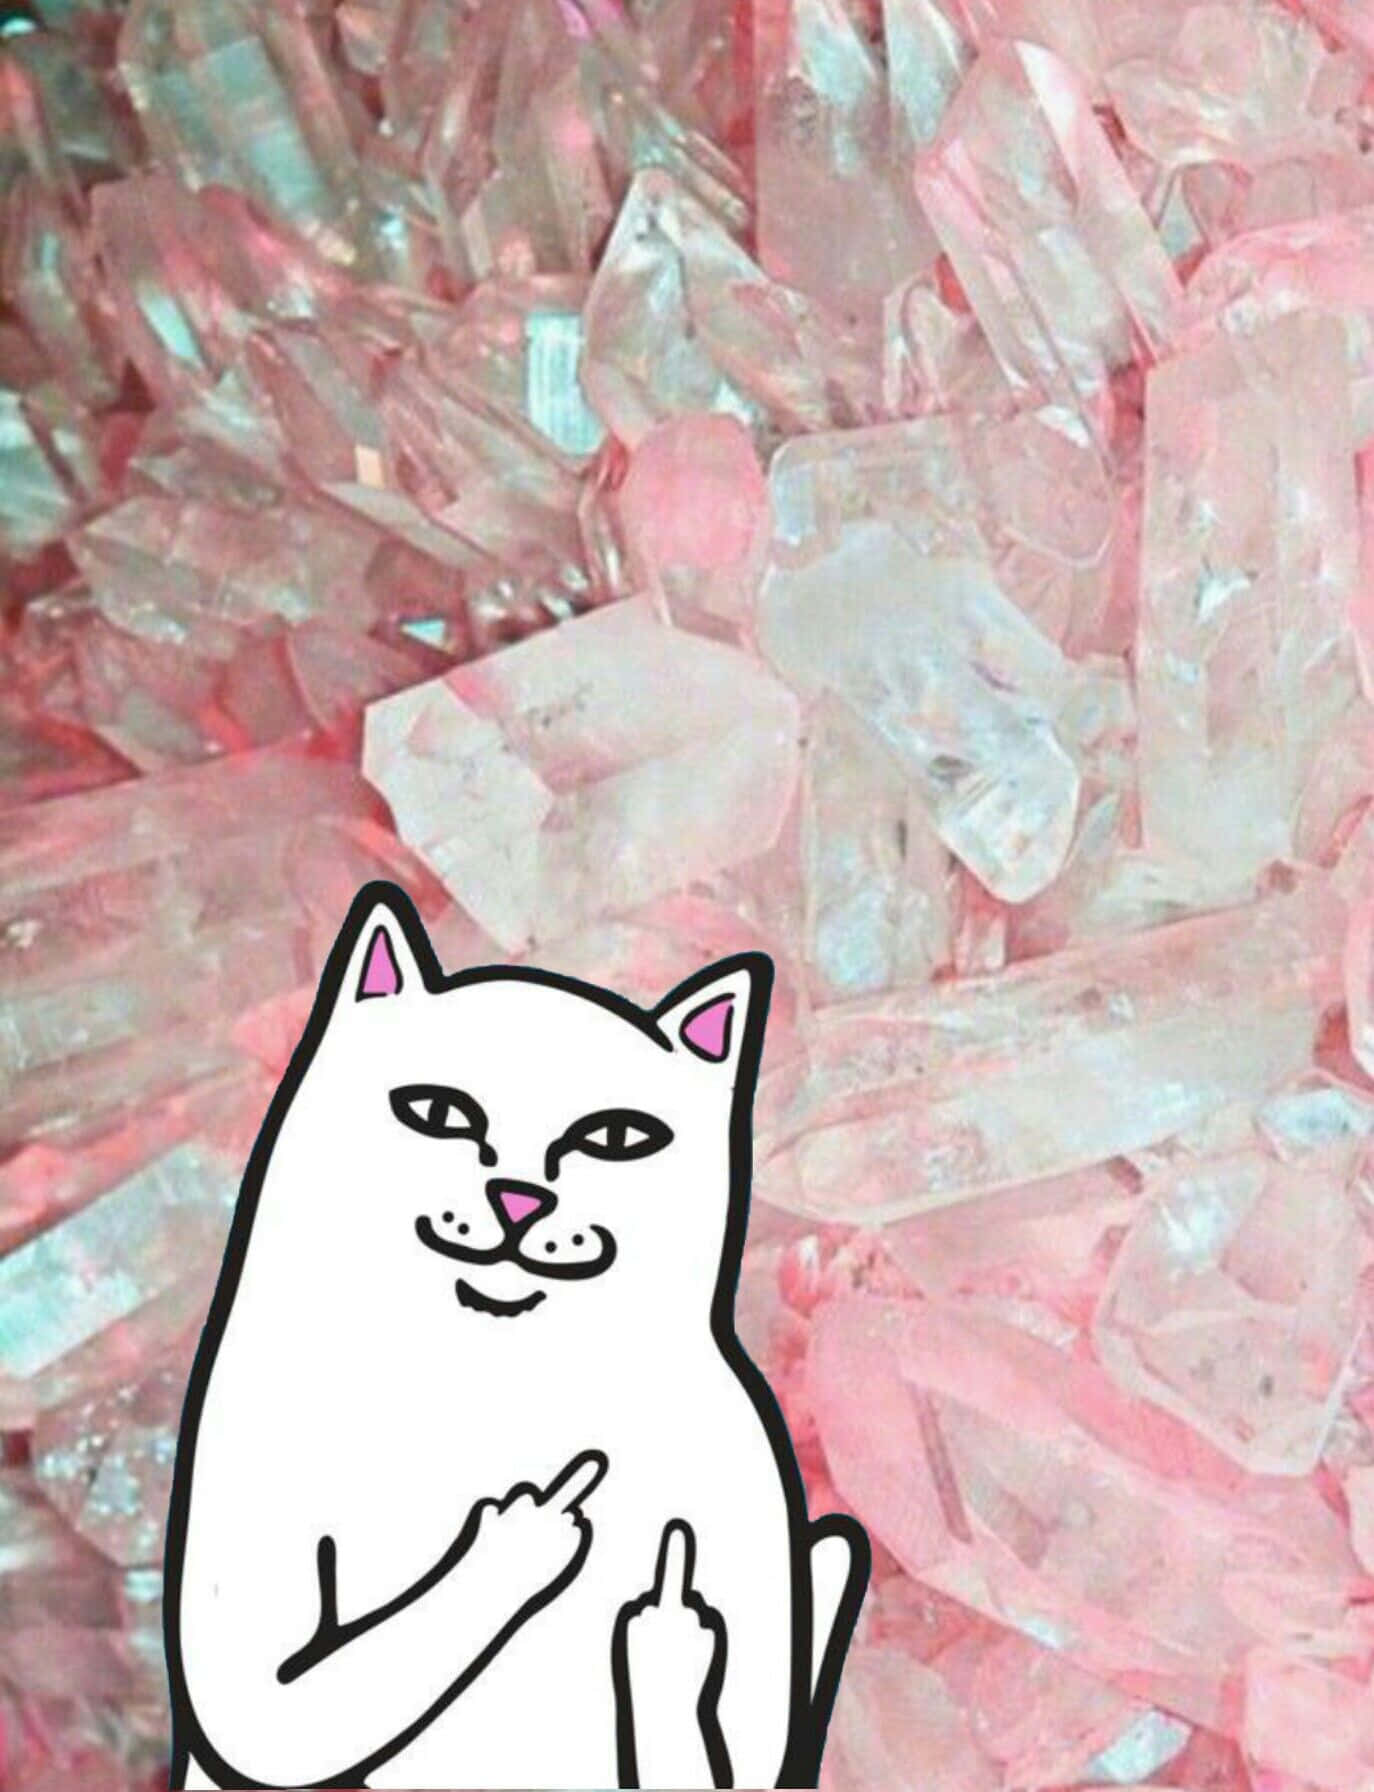 En Kat sidder oven på en bunke af rosa krystaller. Wallpaper